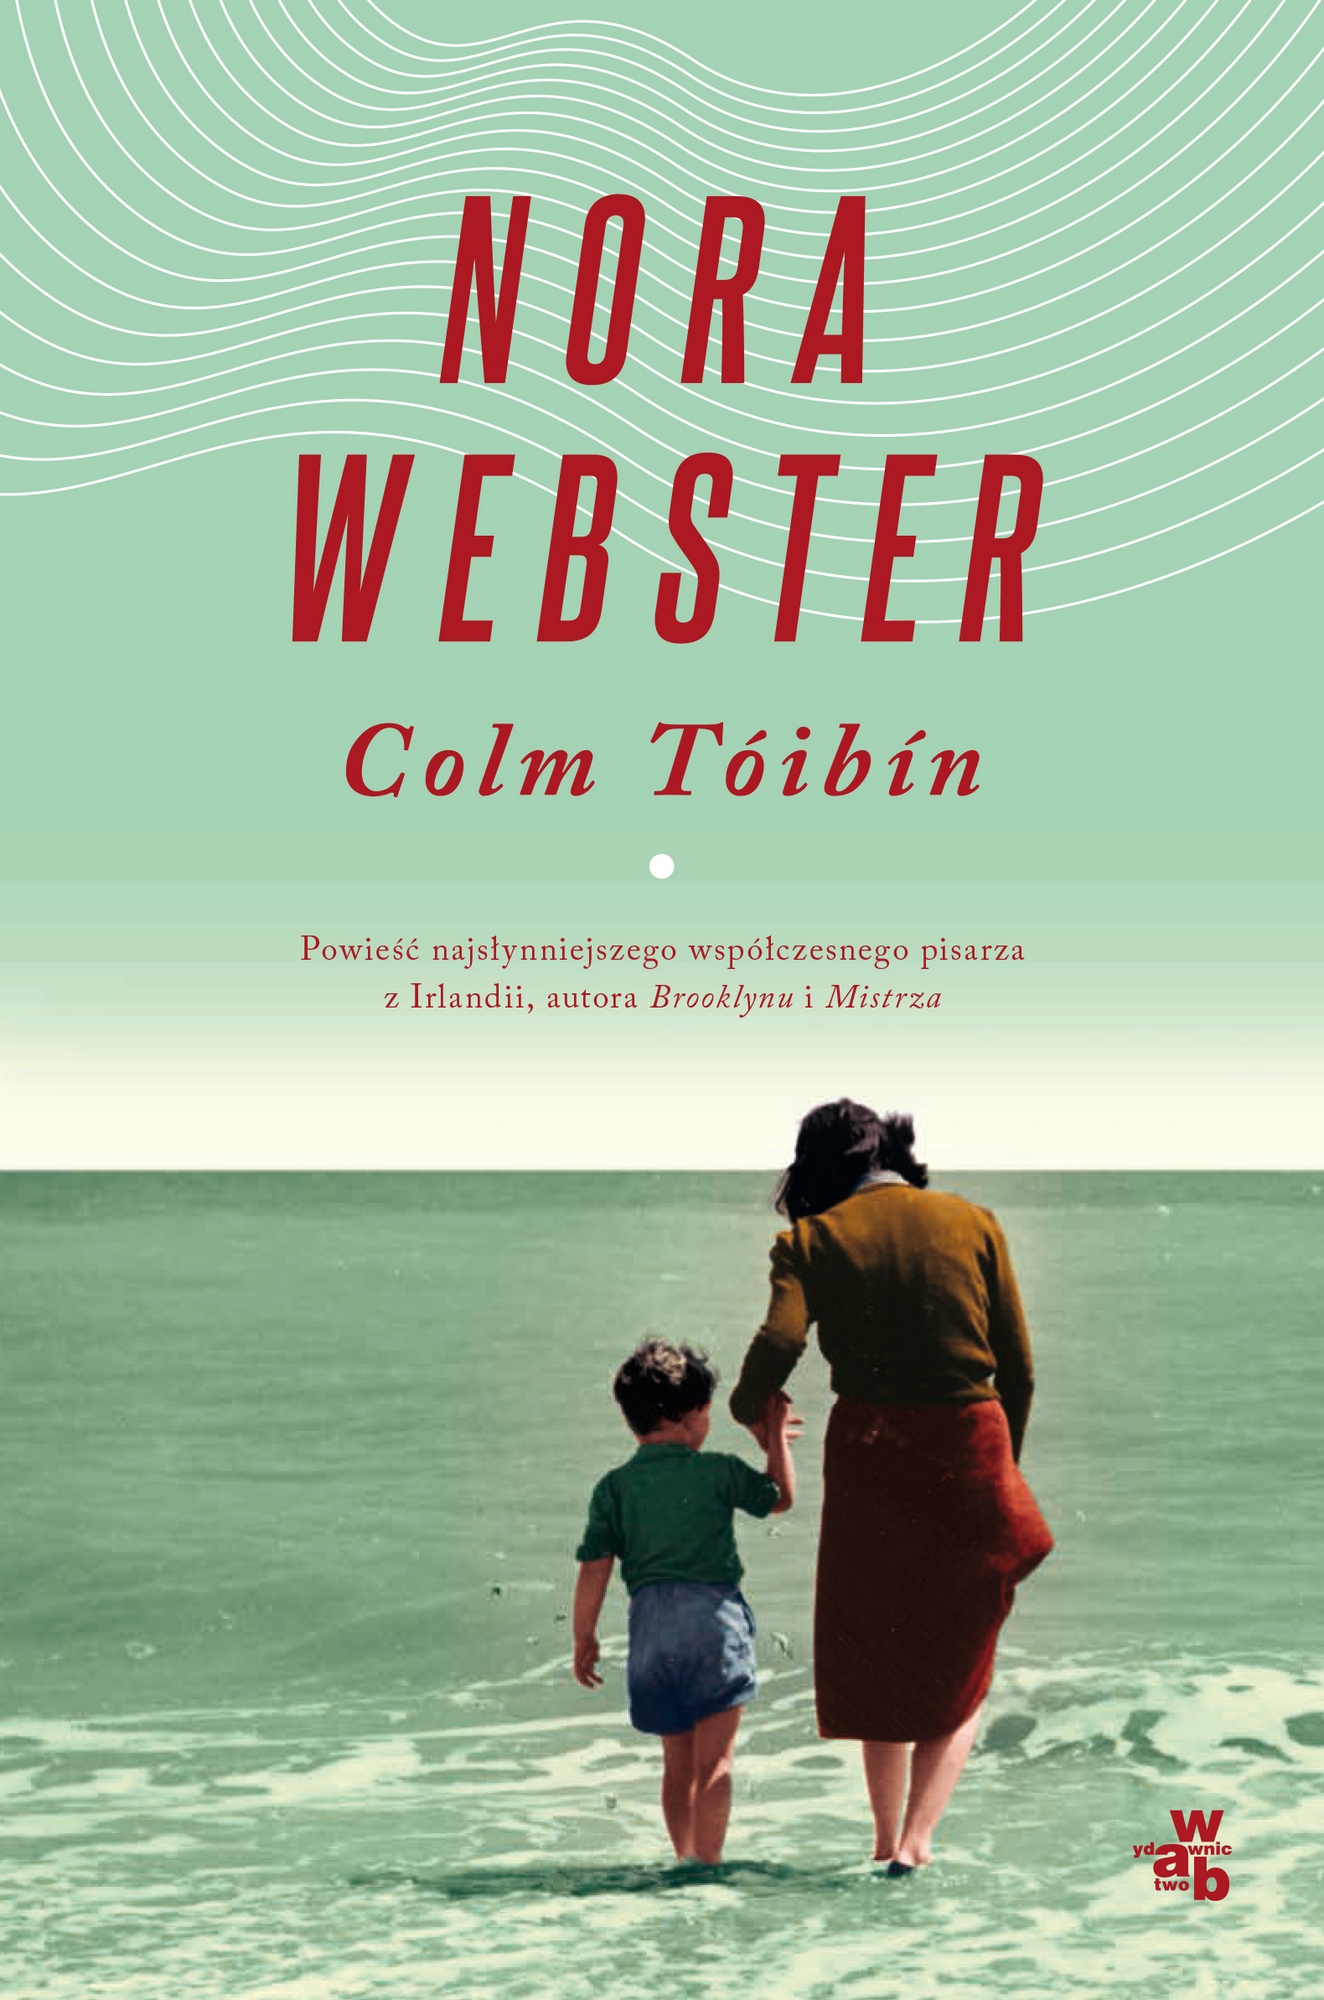 Colm Tóibín, „Nora Webster” – okładka (źródło: materiały prasowe wydawcy)